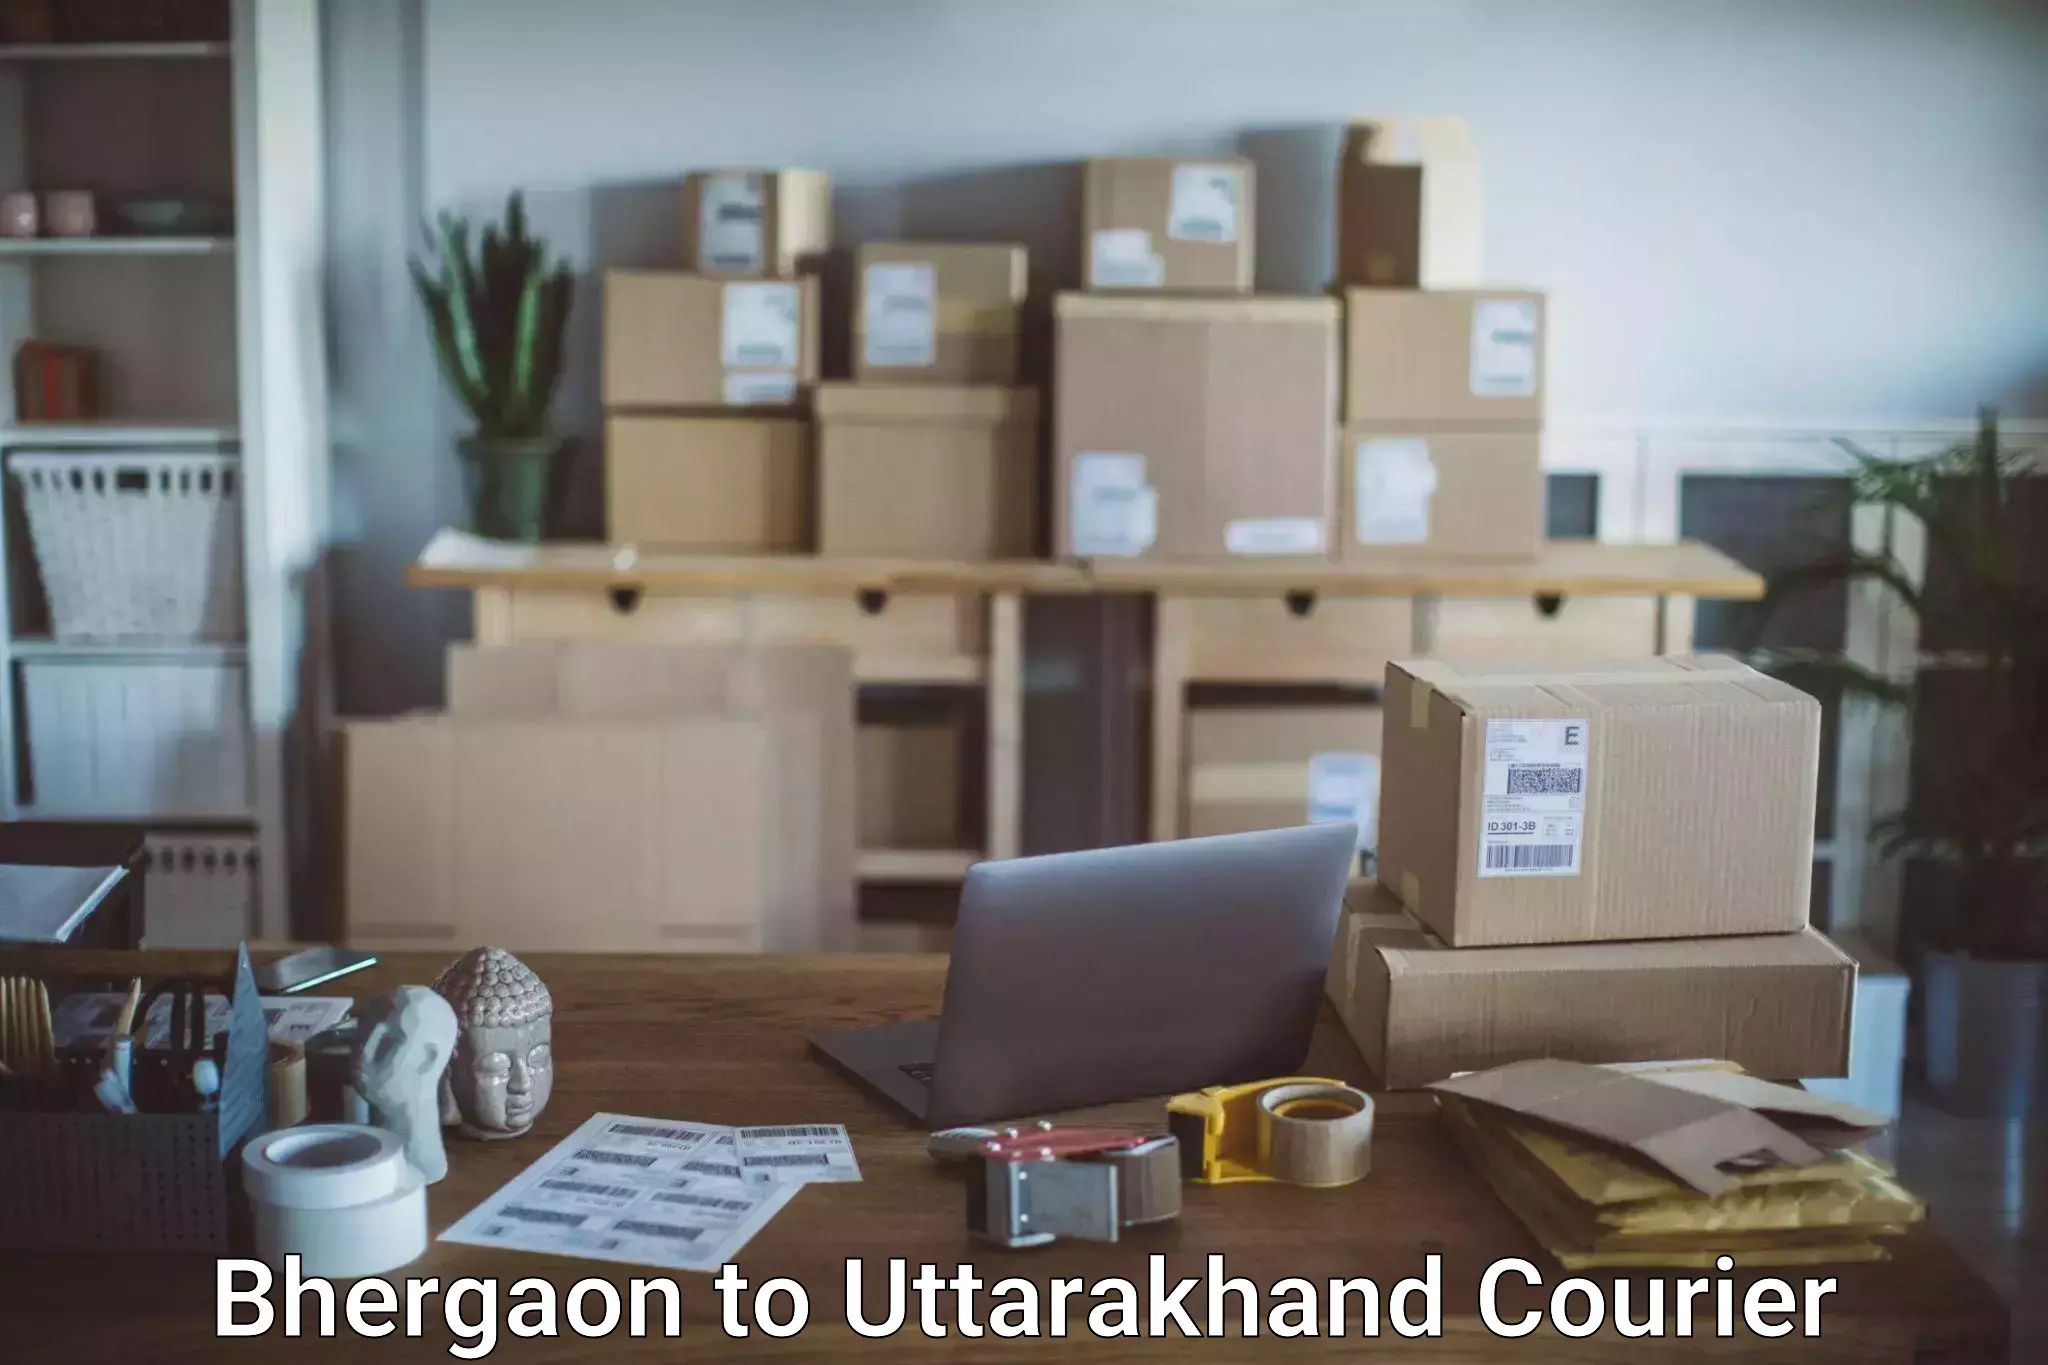 Luggage delivery network Bhergaon to Uttarakhand